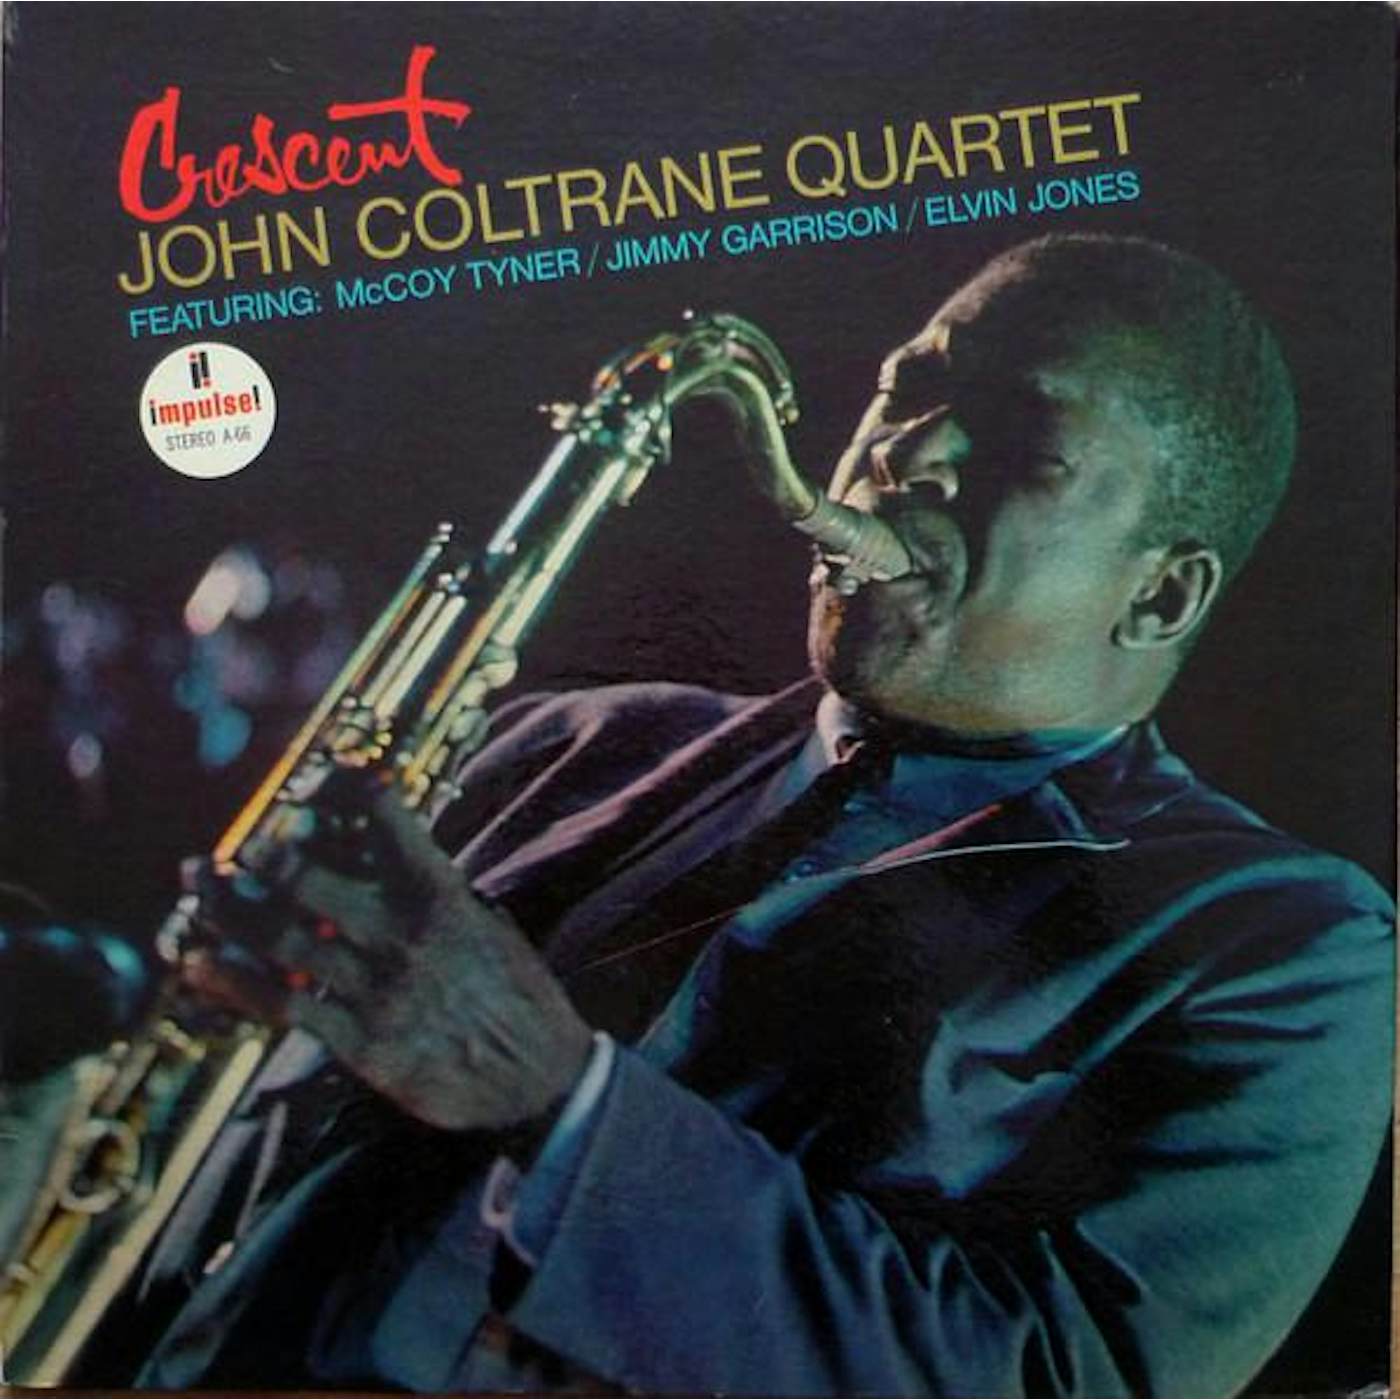 John Coltrane Quartet CRESCENT CD